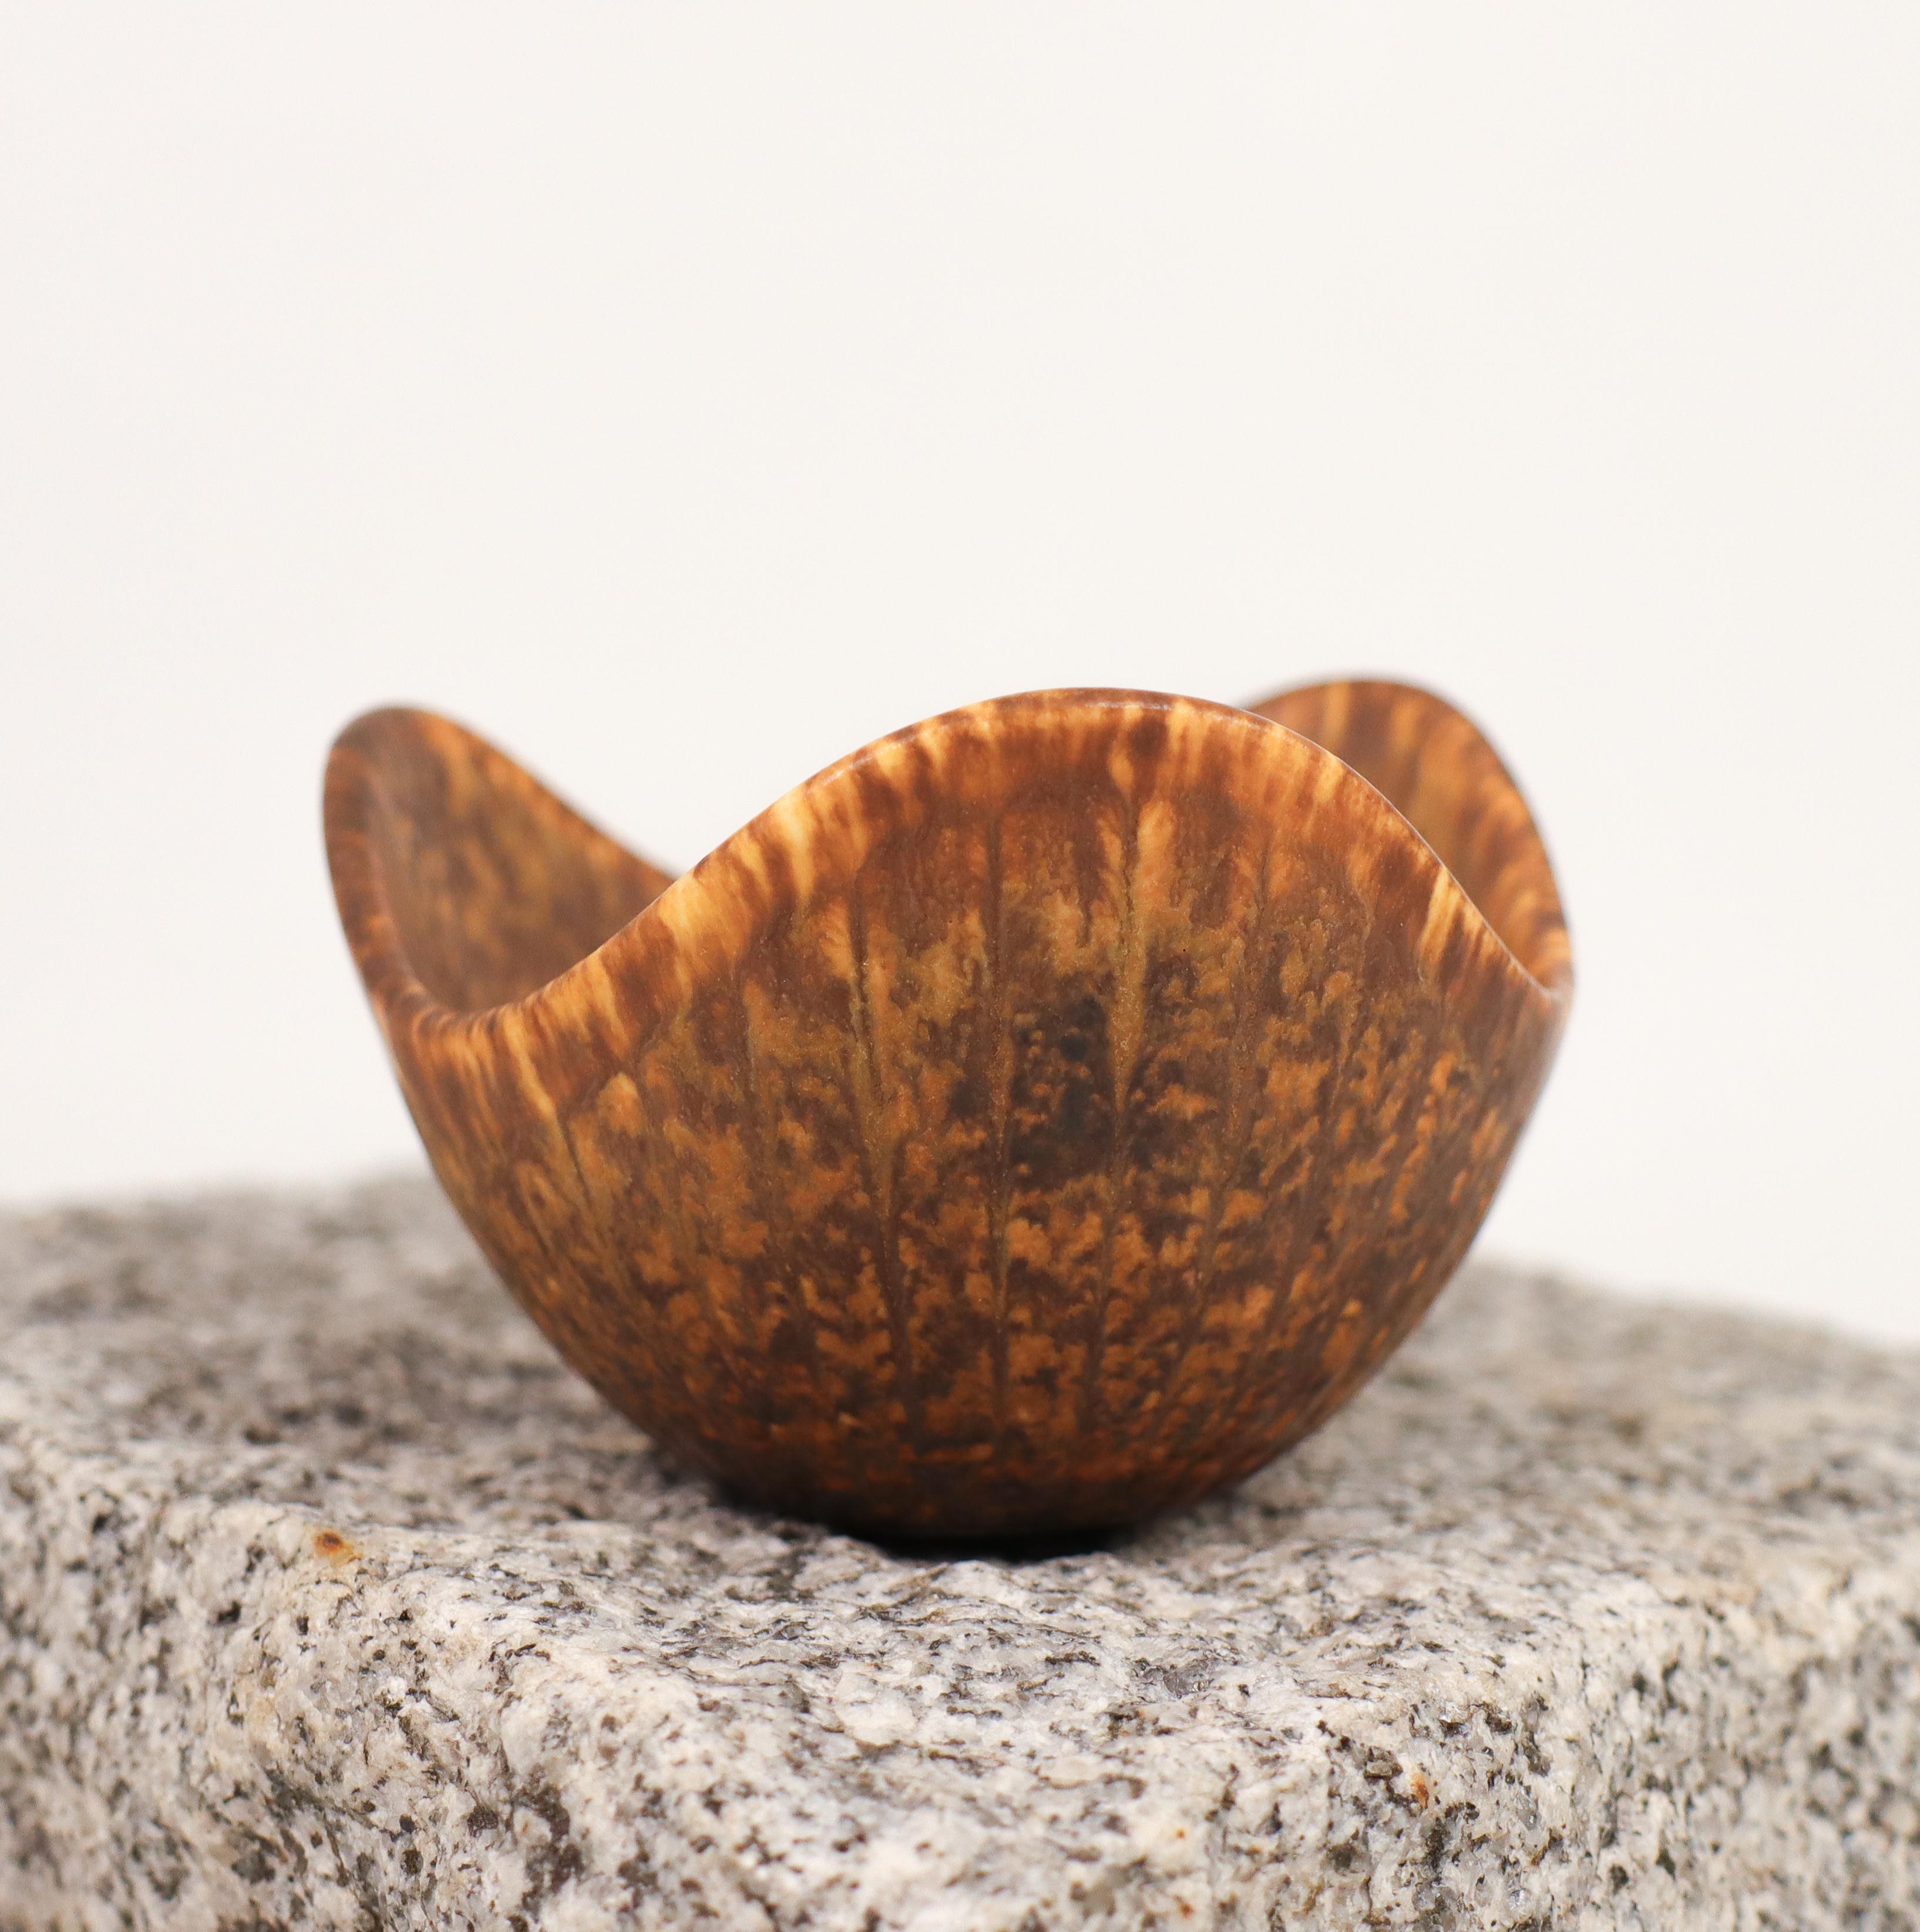 Un bol brun conçu par Gunnar Nylund à Rörstrand, le bol a un diamètre de 9 cm et une hauteur de 5,5 cm. Il est en excellent état, à l'exception d'une petite fissure sur la base, ce qui explique qu'il soit marqué comme étant de 2ème qualité.